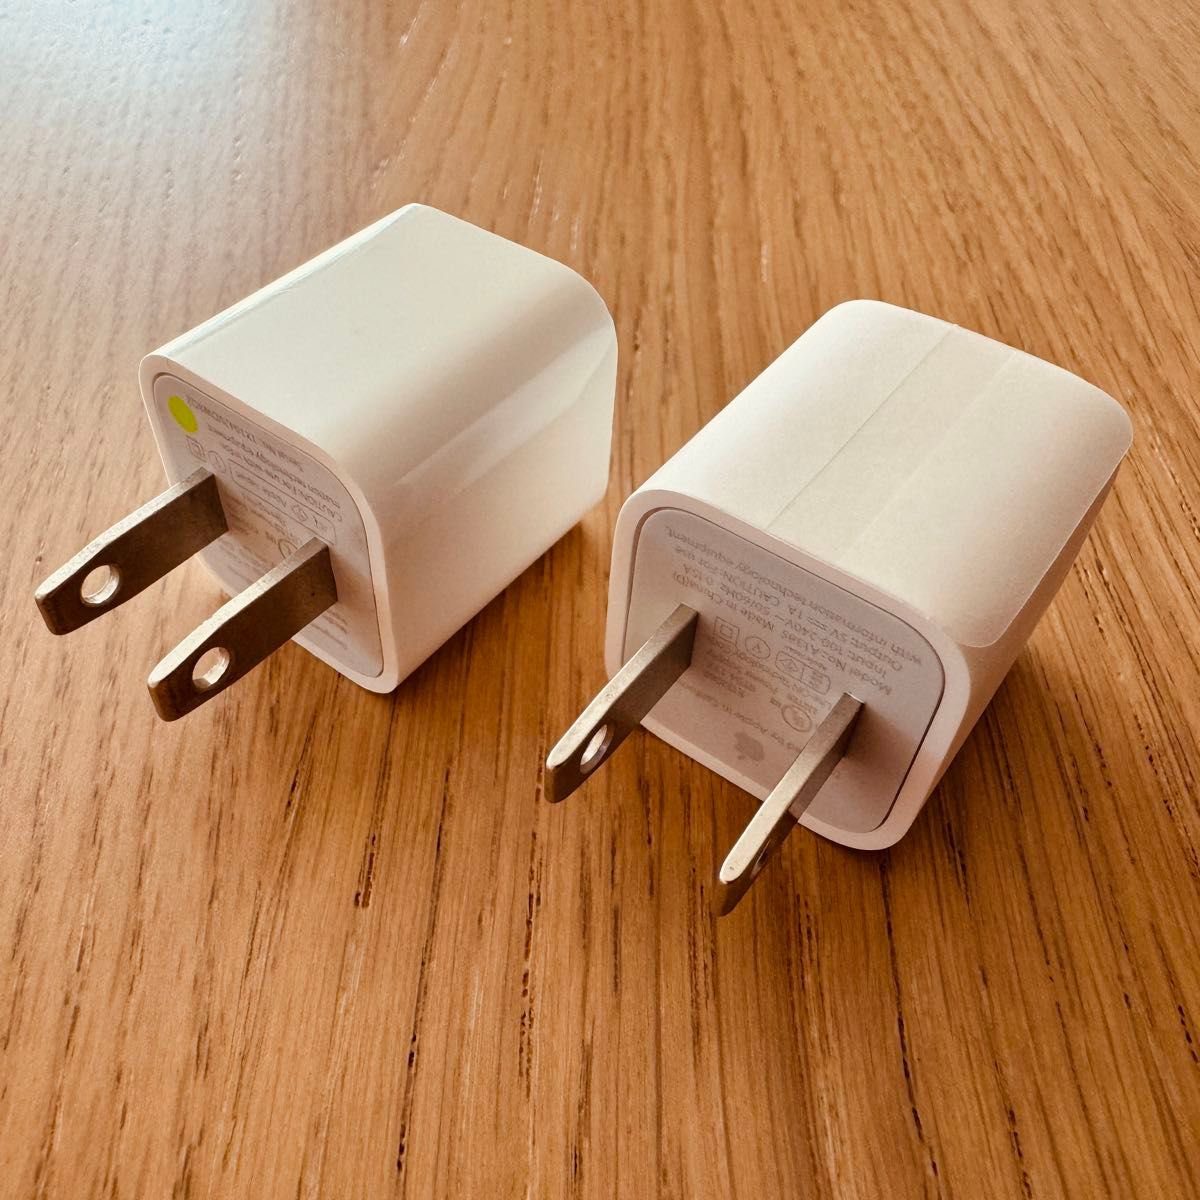 Apple 純正品 ACアダプター USB 充電器 x2 iPhone iPad アップル スマホ タブレット充電